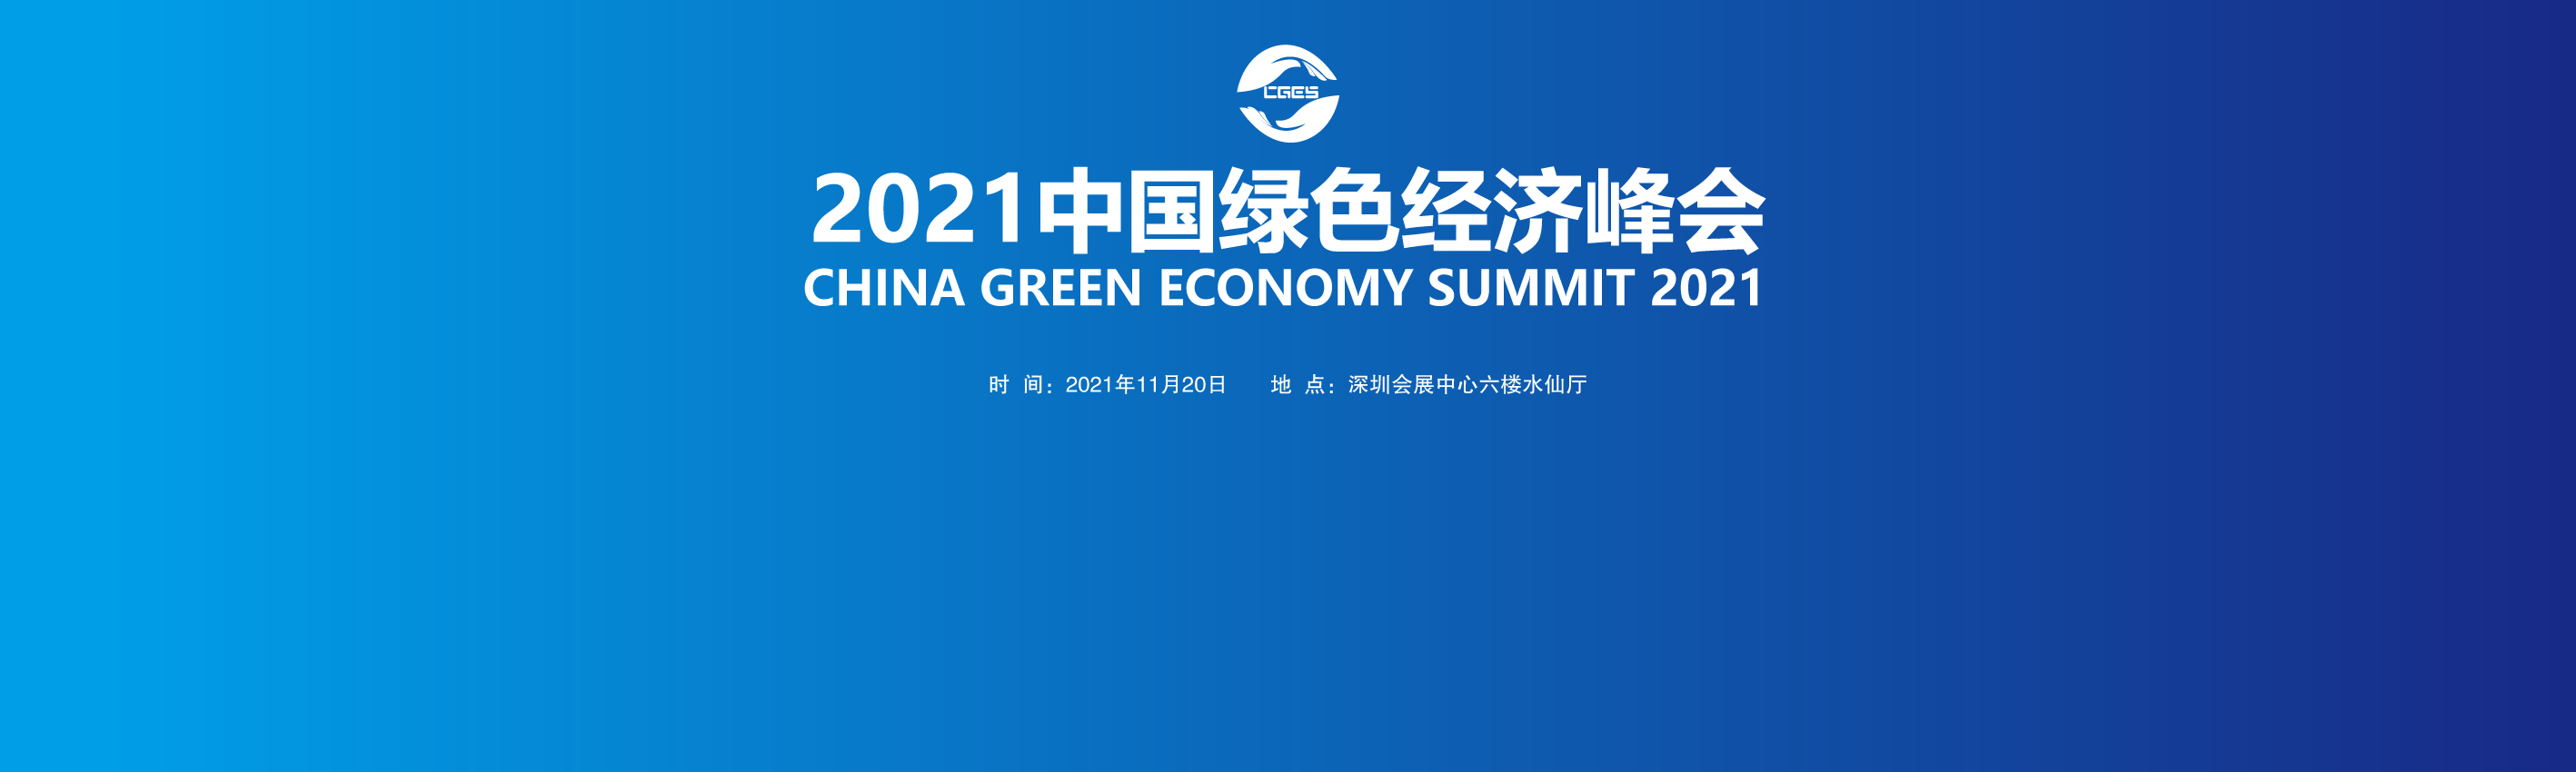 2021中国绿色经济峰会